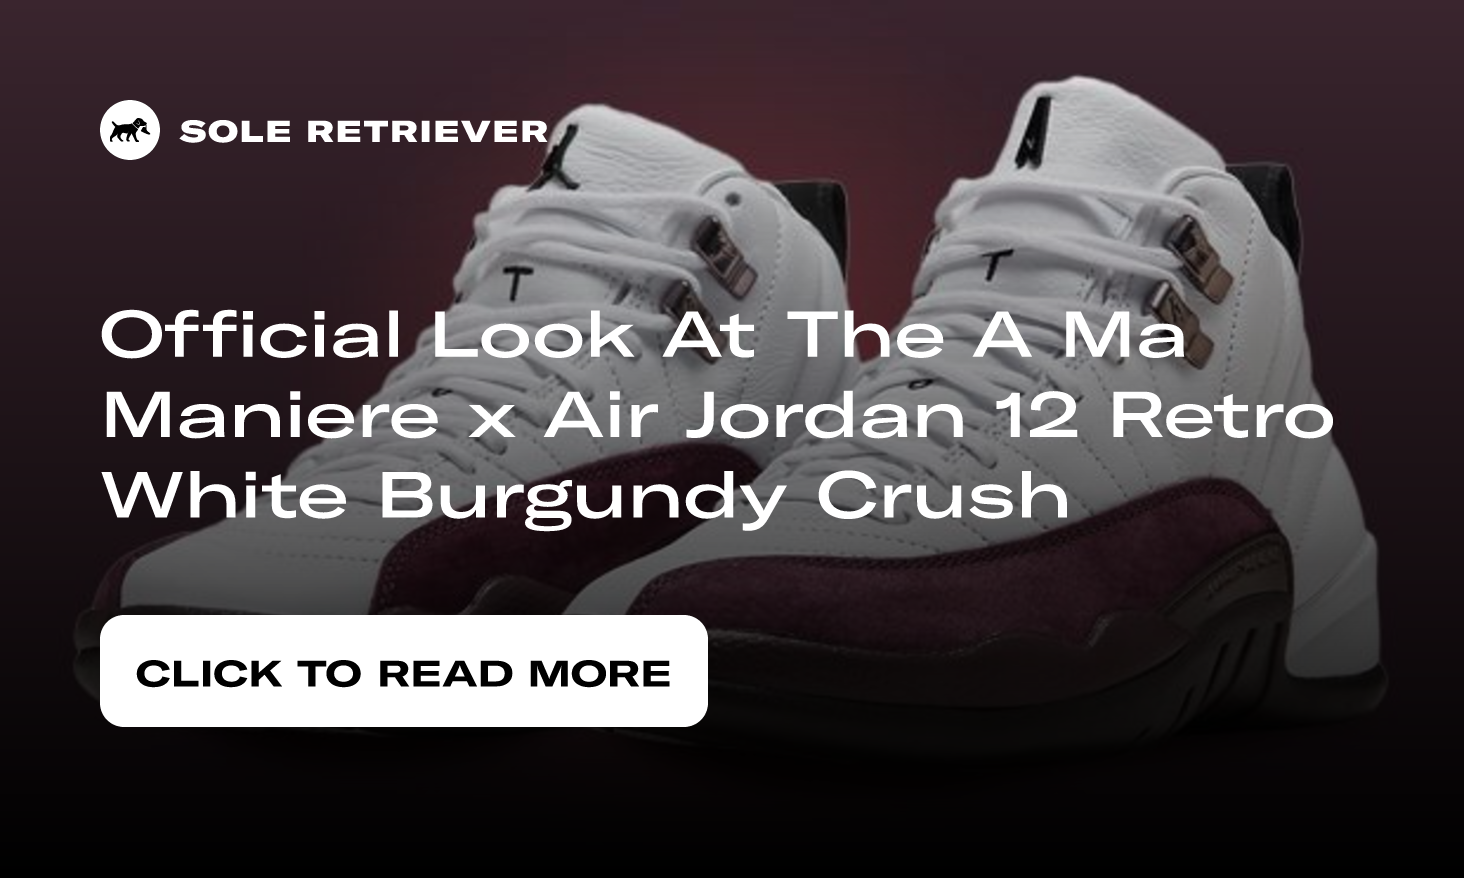 Official Look At The A Ma Maniere x Air Jordan 12 Retro White